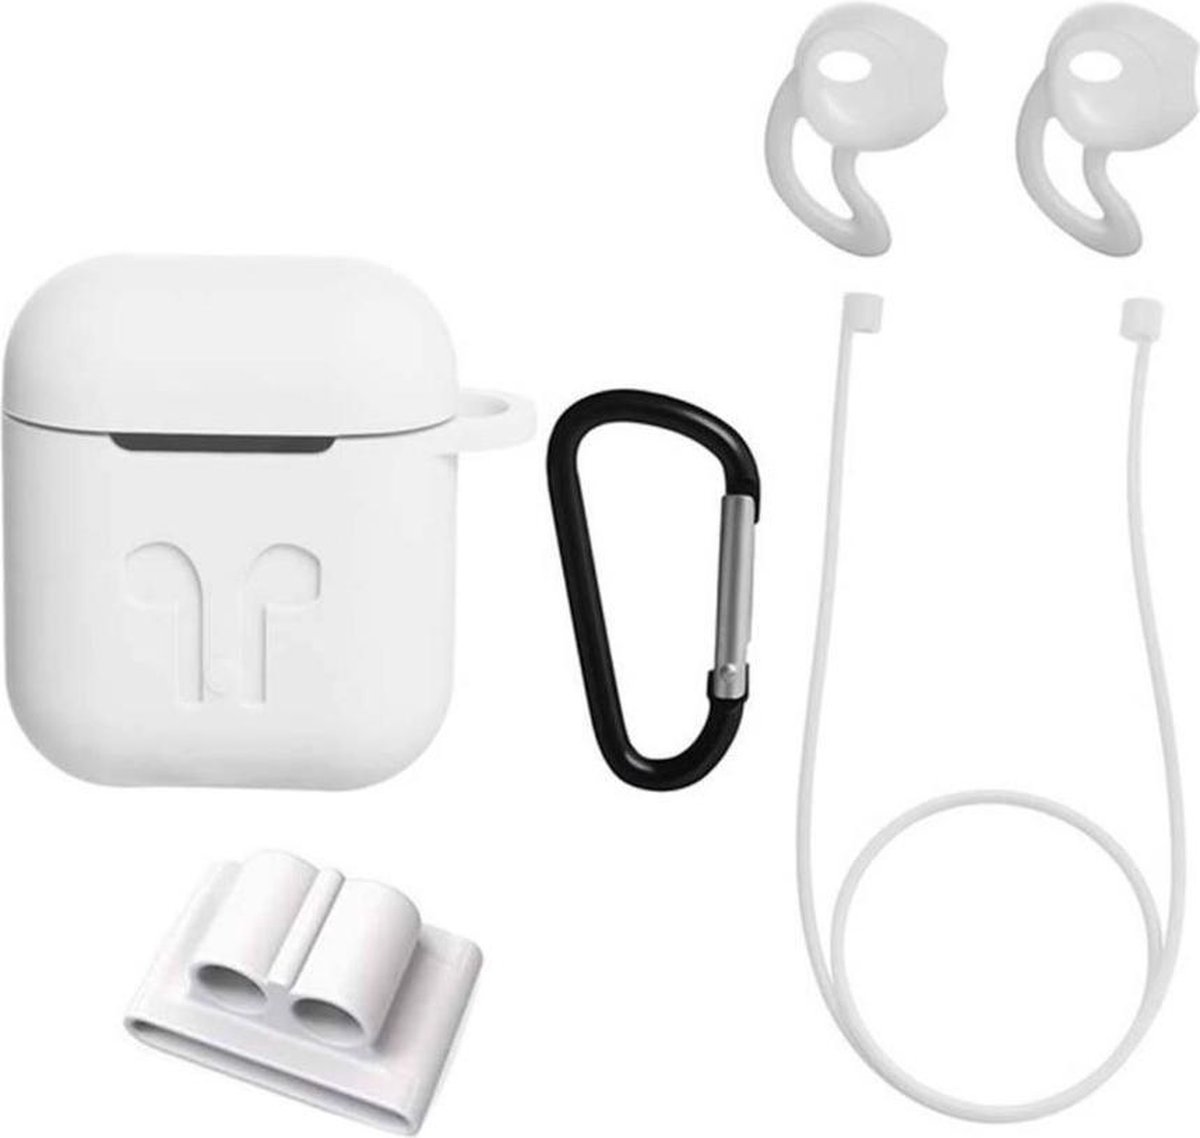 Airpods Hoesje Wit - Siliconen Case Cover voor Apple Airpods - 5 in 1 set met Anti Lost Strap en Haak